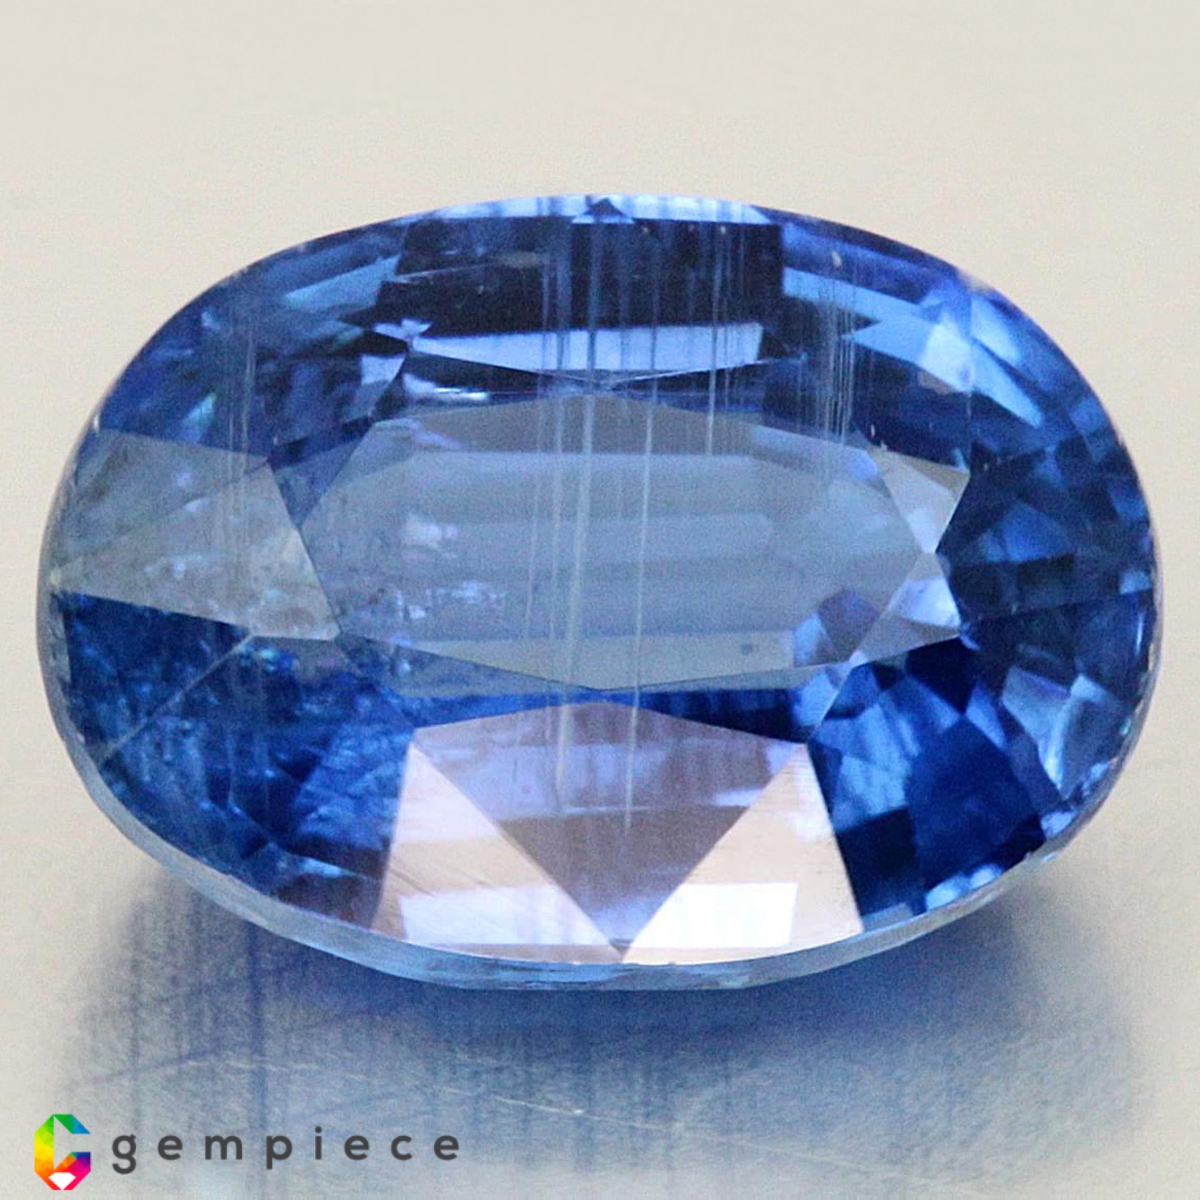 Oval Mohshärte 9,0 1 synthetischer Stein 11x9 mm Blue Spinell #13 Corundum 